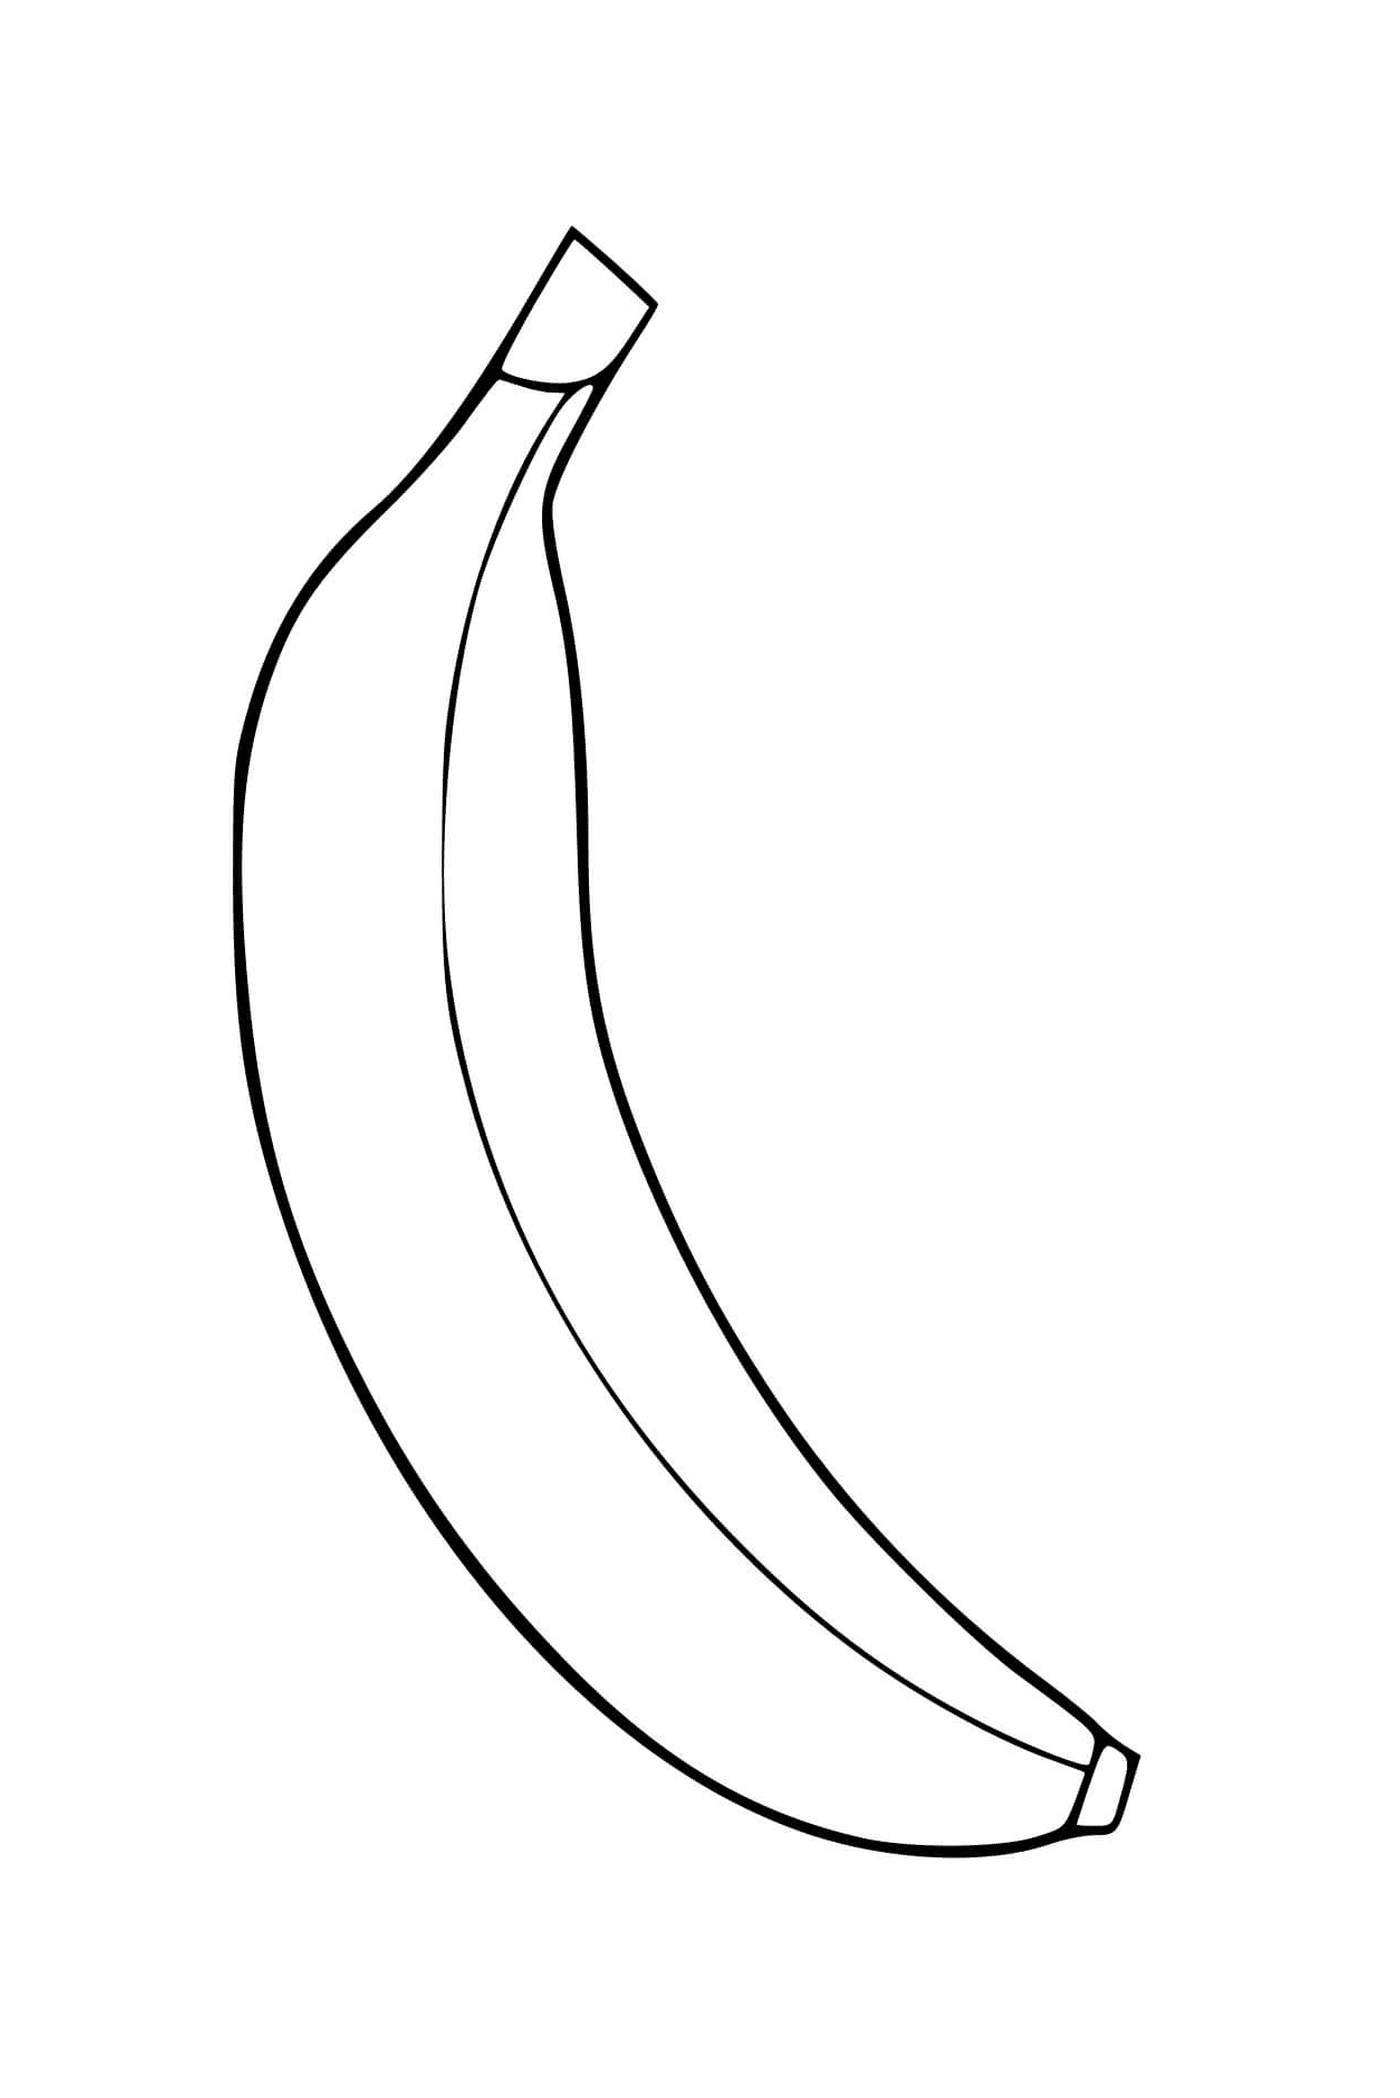  Una banana 